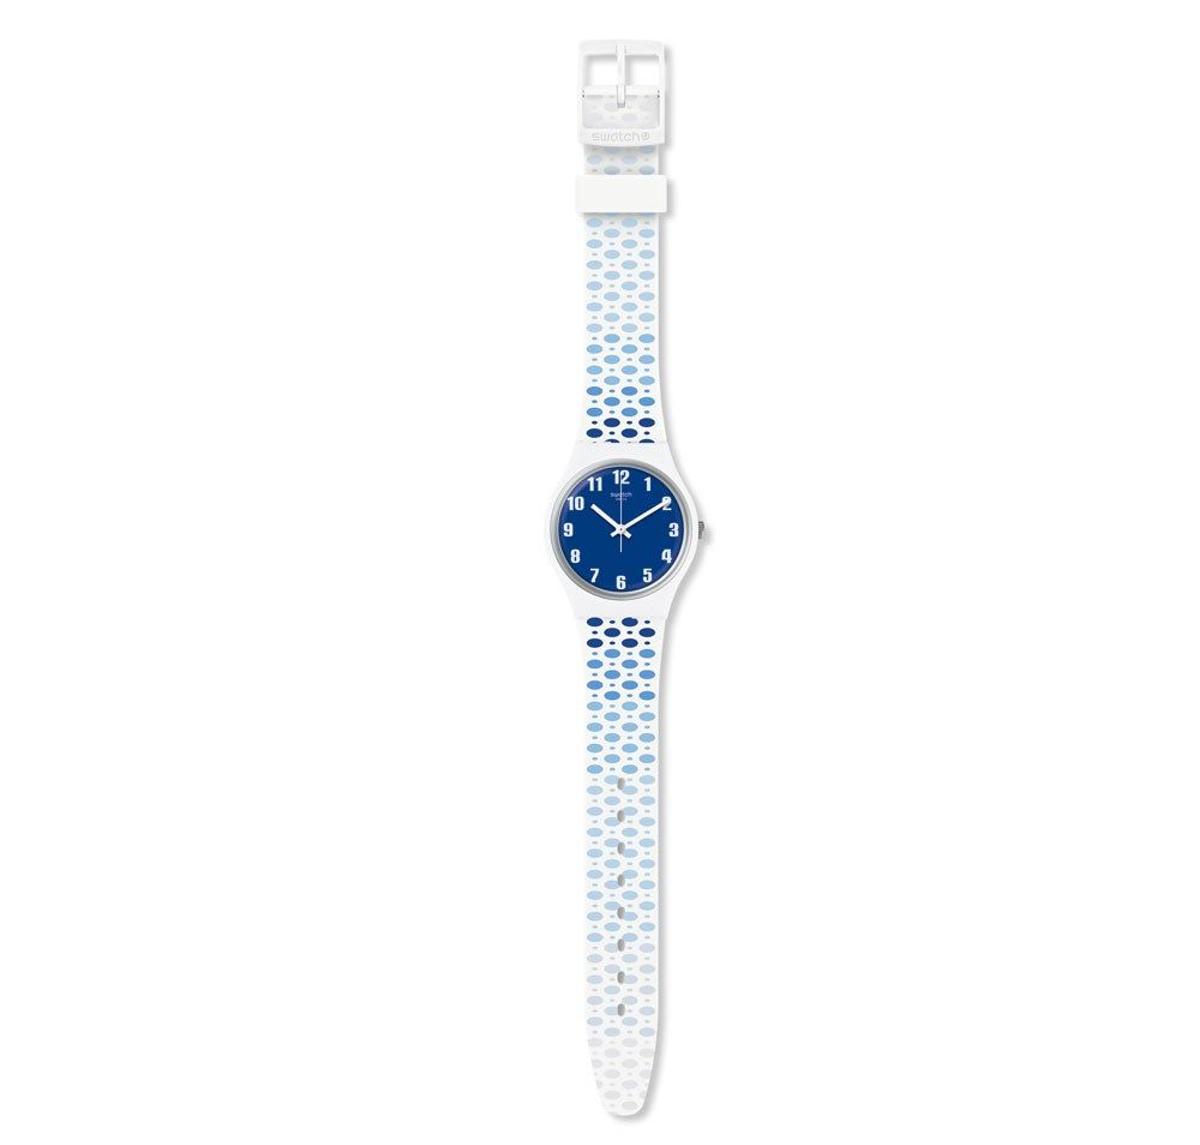 Reloj Swatch con correa blanca y lunares azules. (Precio: 60 euros)